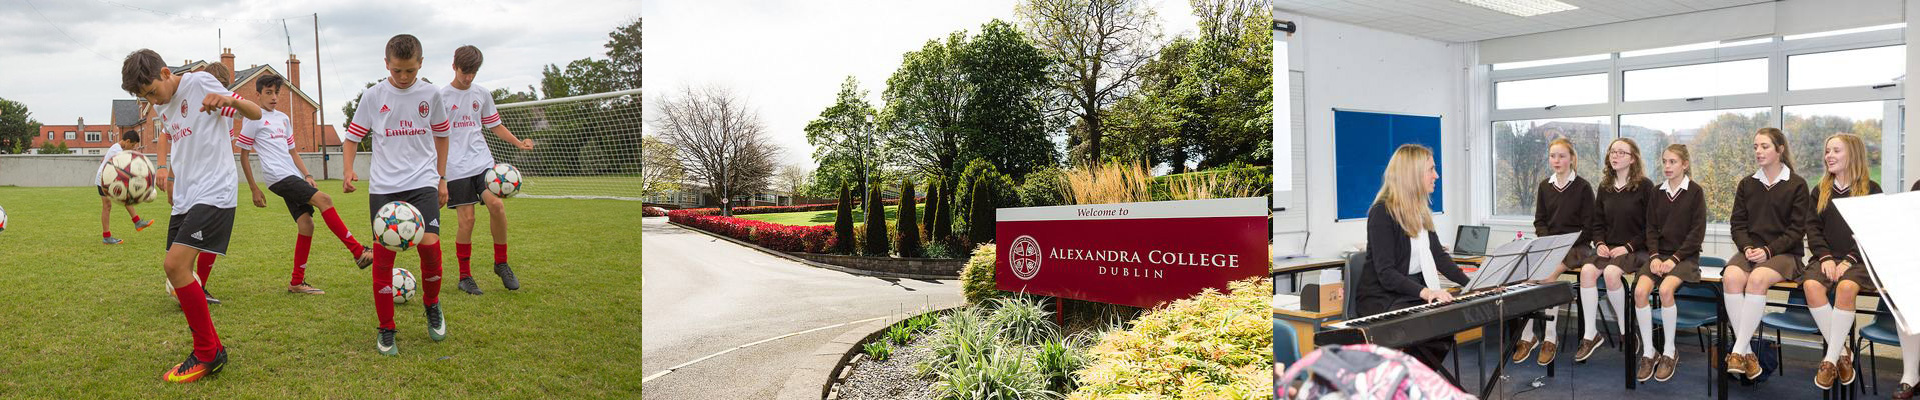 Alexandra College con actividades, música o fútbol